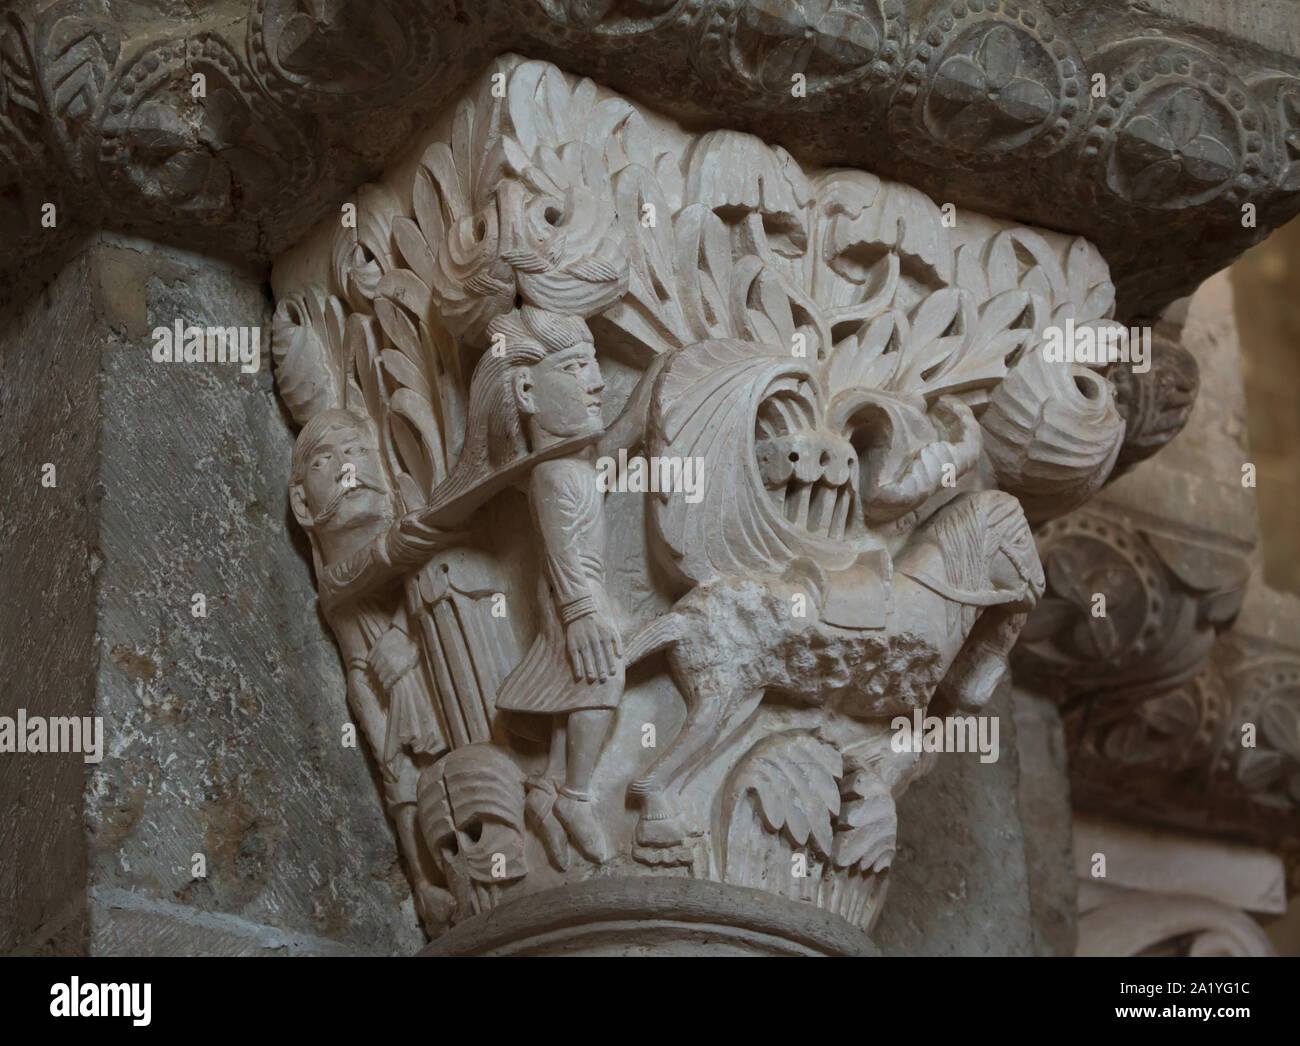 La morte di Assalonne alla battaglia del legno di Efraim rappresentato nel capitello romanico risale al xii secolo nella basilica di Santa Maria Maddalena (Basilique Sainte-Marie-Madeleine de Vézelay) di Vézelay Abbey (Abbaye Sainte-Marie-Madeleine de Vézelay) in Vézelay, Borgogna, Francia. Absalom i capelli è catturato in rami di un albero e la sua testa è di essere tagliati da Joab, uno del re Davide gli uomini. Foto Stock